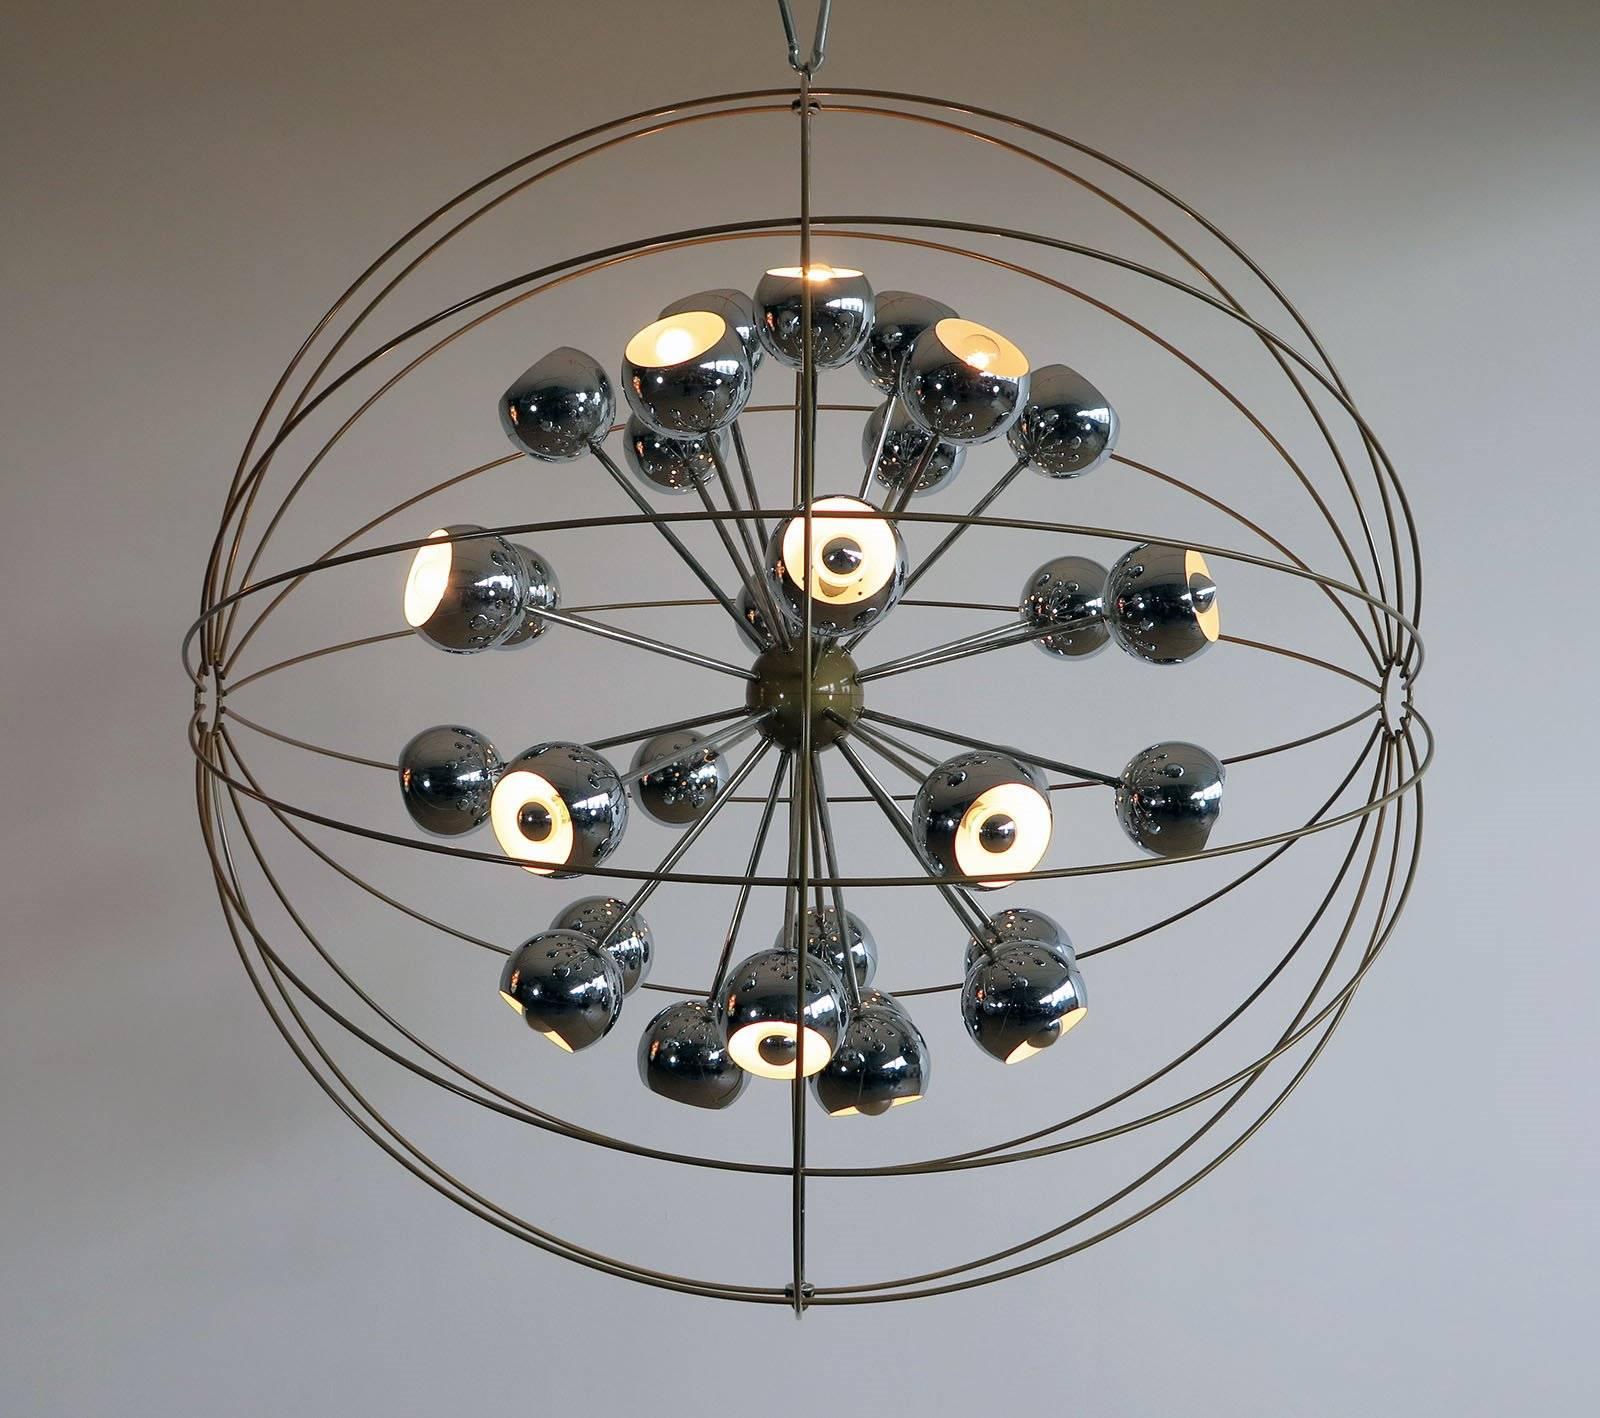 Création unique avec 30 lampes originales Reggiani en forme de globe oculaire chromé, comme des étoiles dans l'espace, arrondies
avec un cadre métallique.
Nous pouvons câbler pour les normes américaines, 30 ampoules E27.